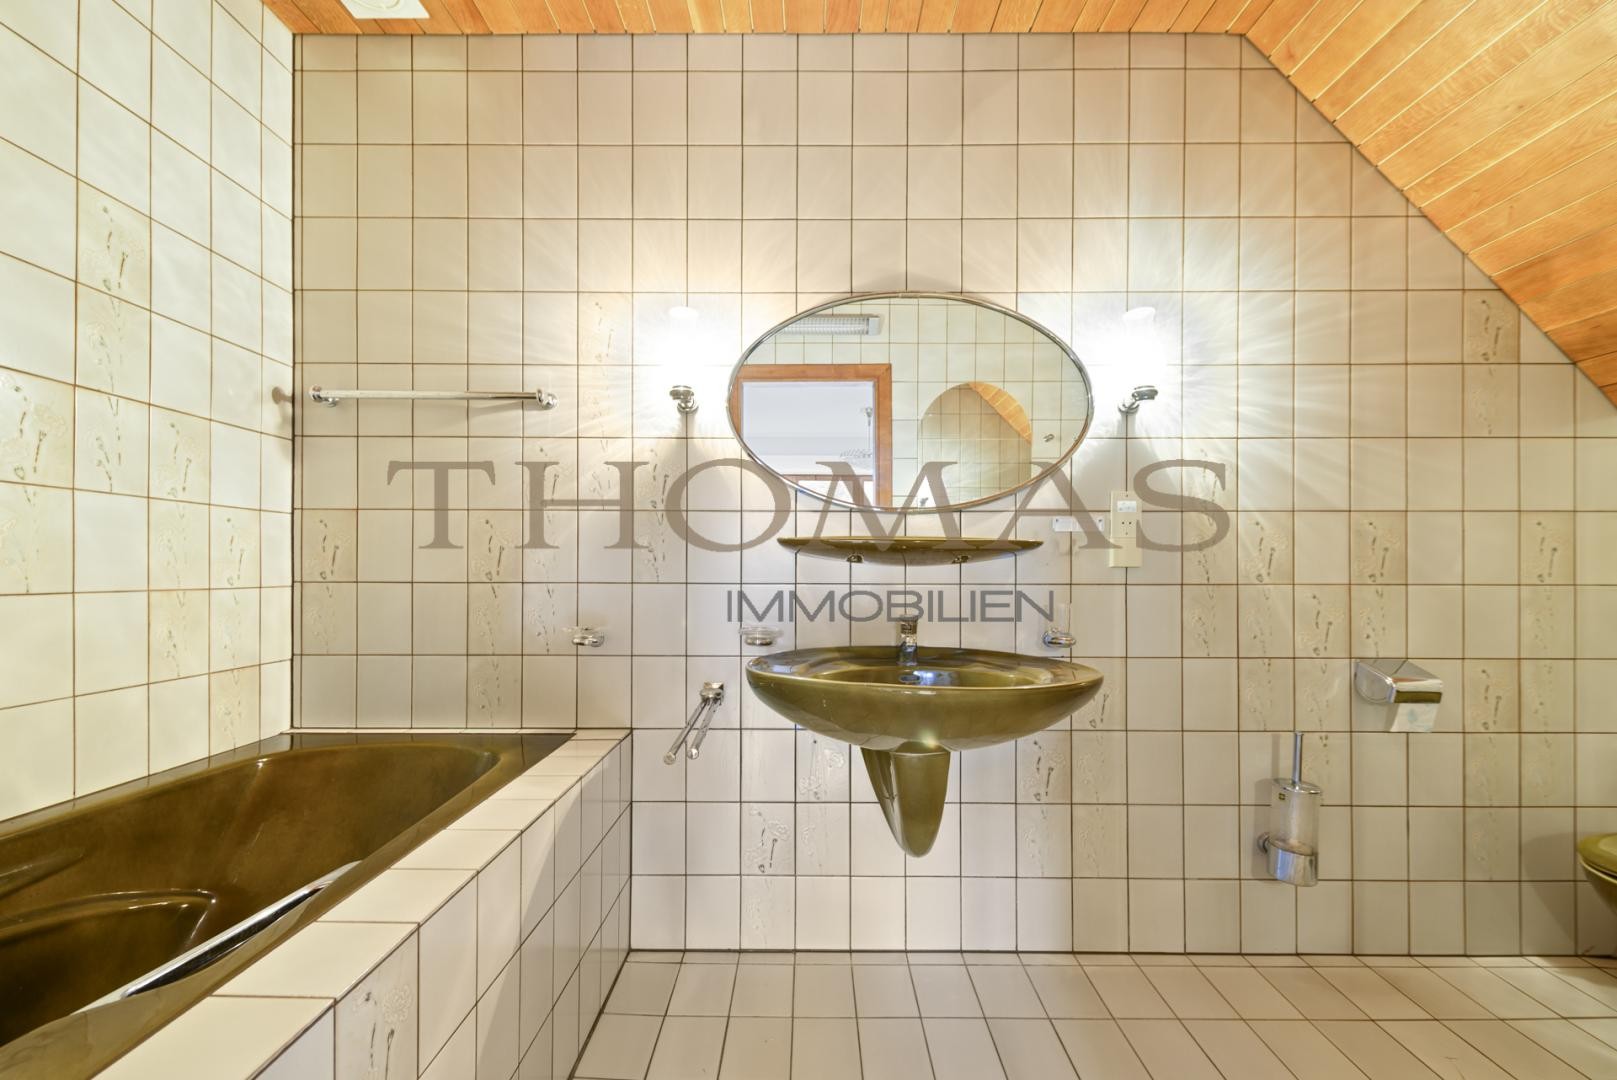 Thomas Immobilien- Einzigartige Villa in Baden mit Pool